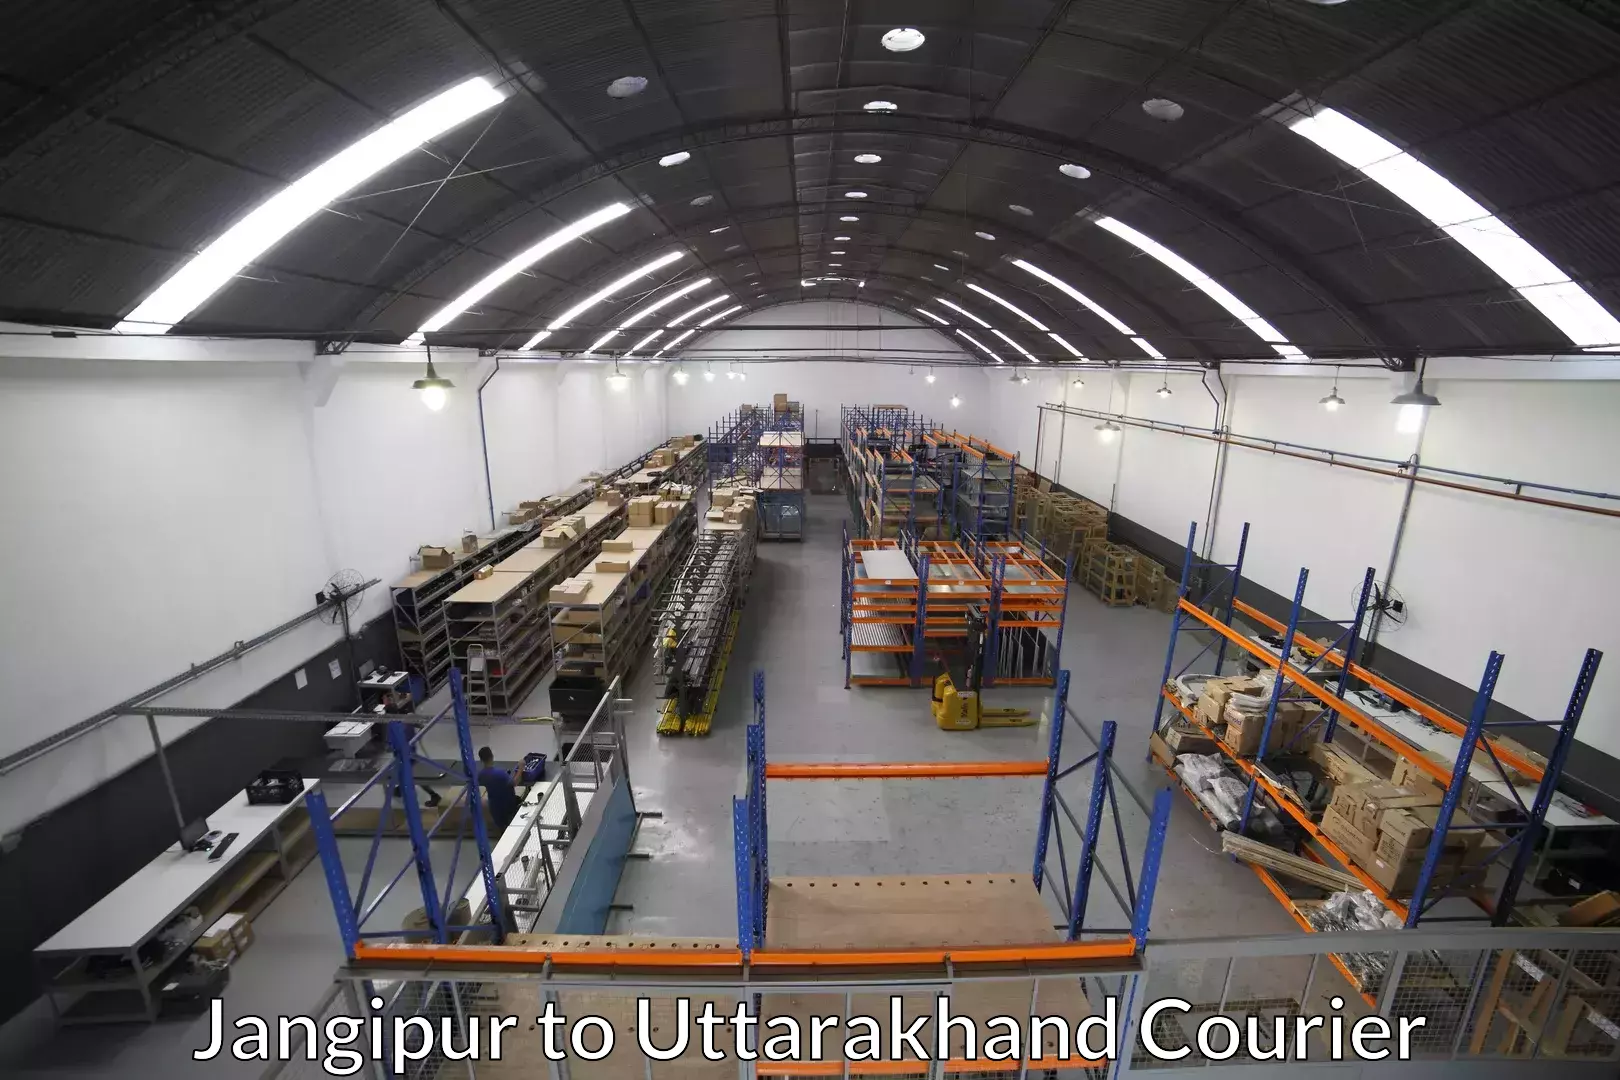 Professional movers Jangipur to Uttarakhand